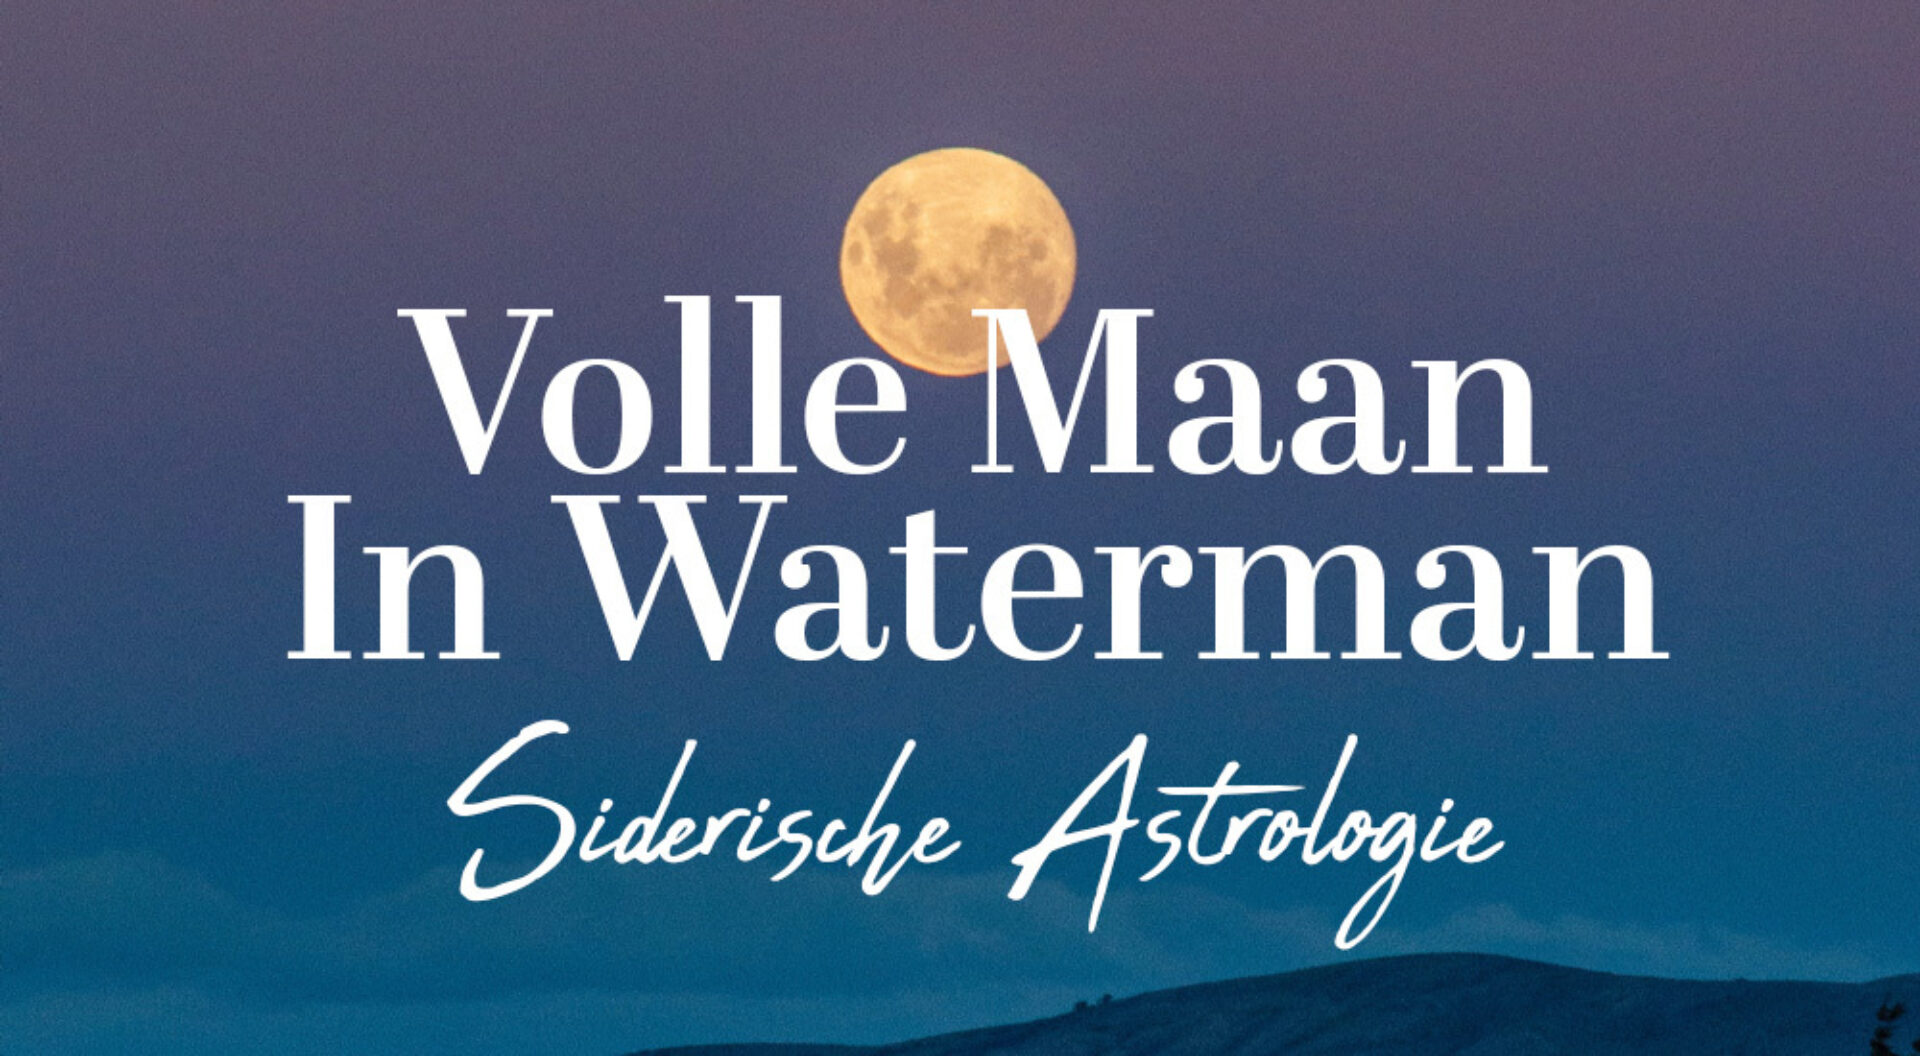 Siderische astrologie: de Volle Maan in Waterman op 10 september 2022